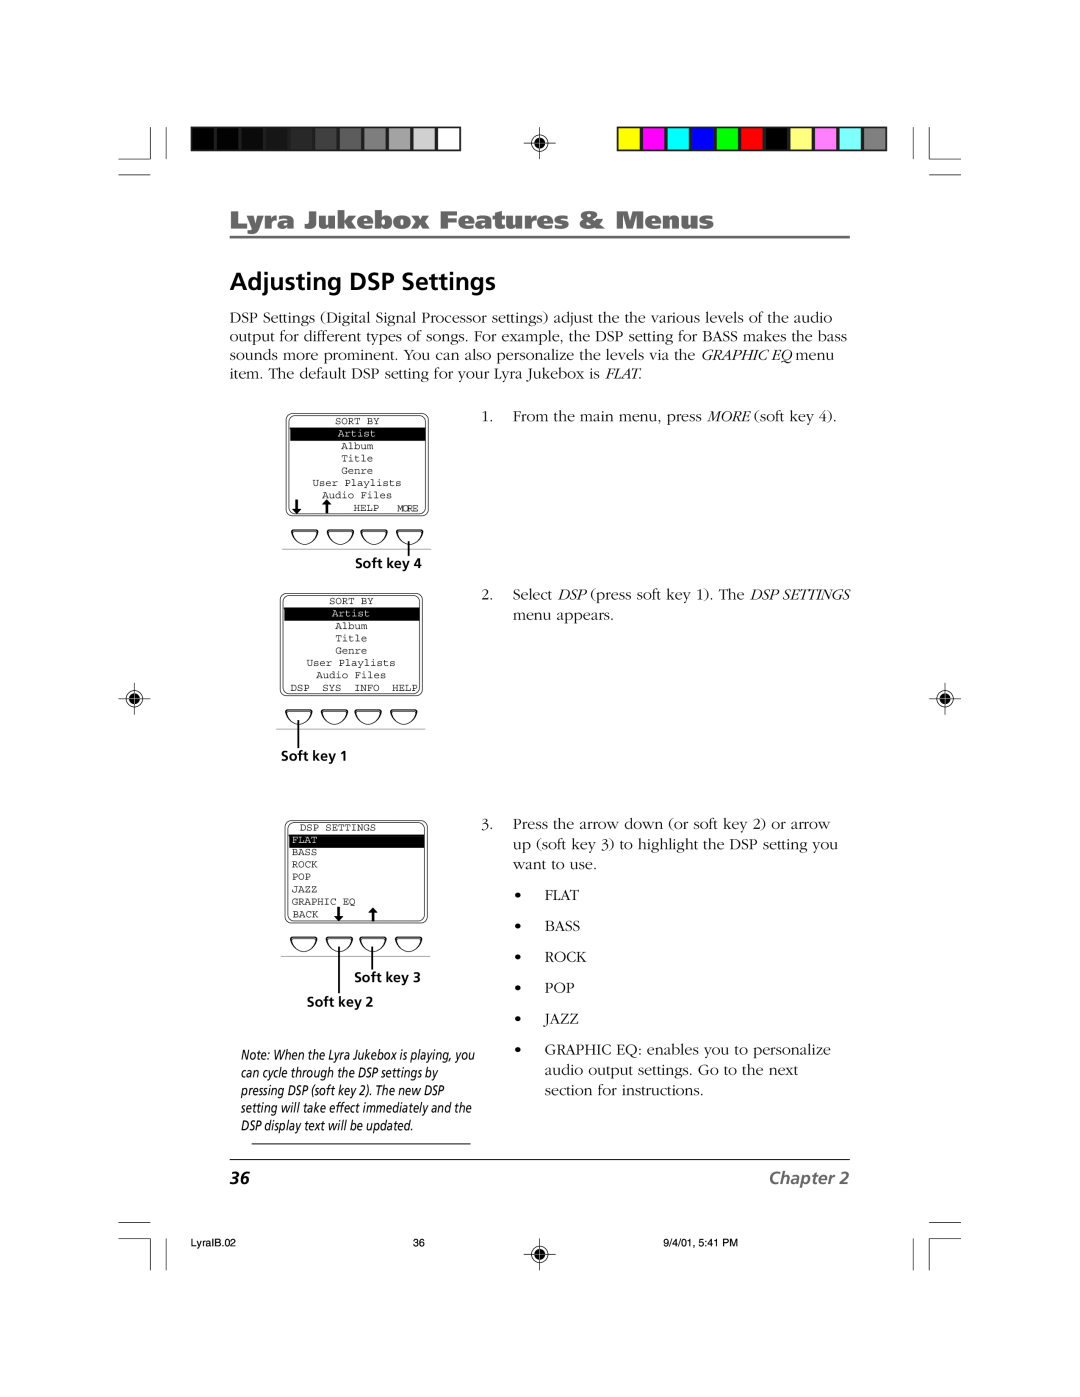 RCA RD2800 manual Adjusting DSP Settings, Lyra Jukebox Features & Menus, Chapter 